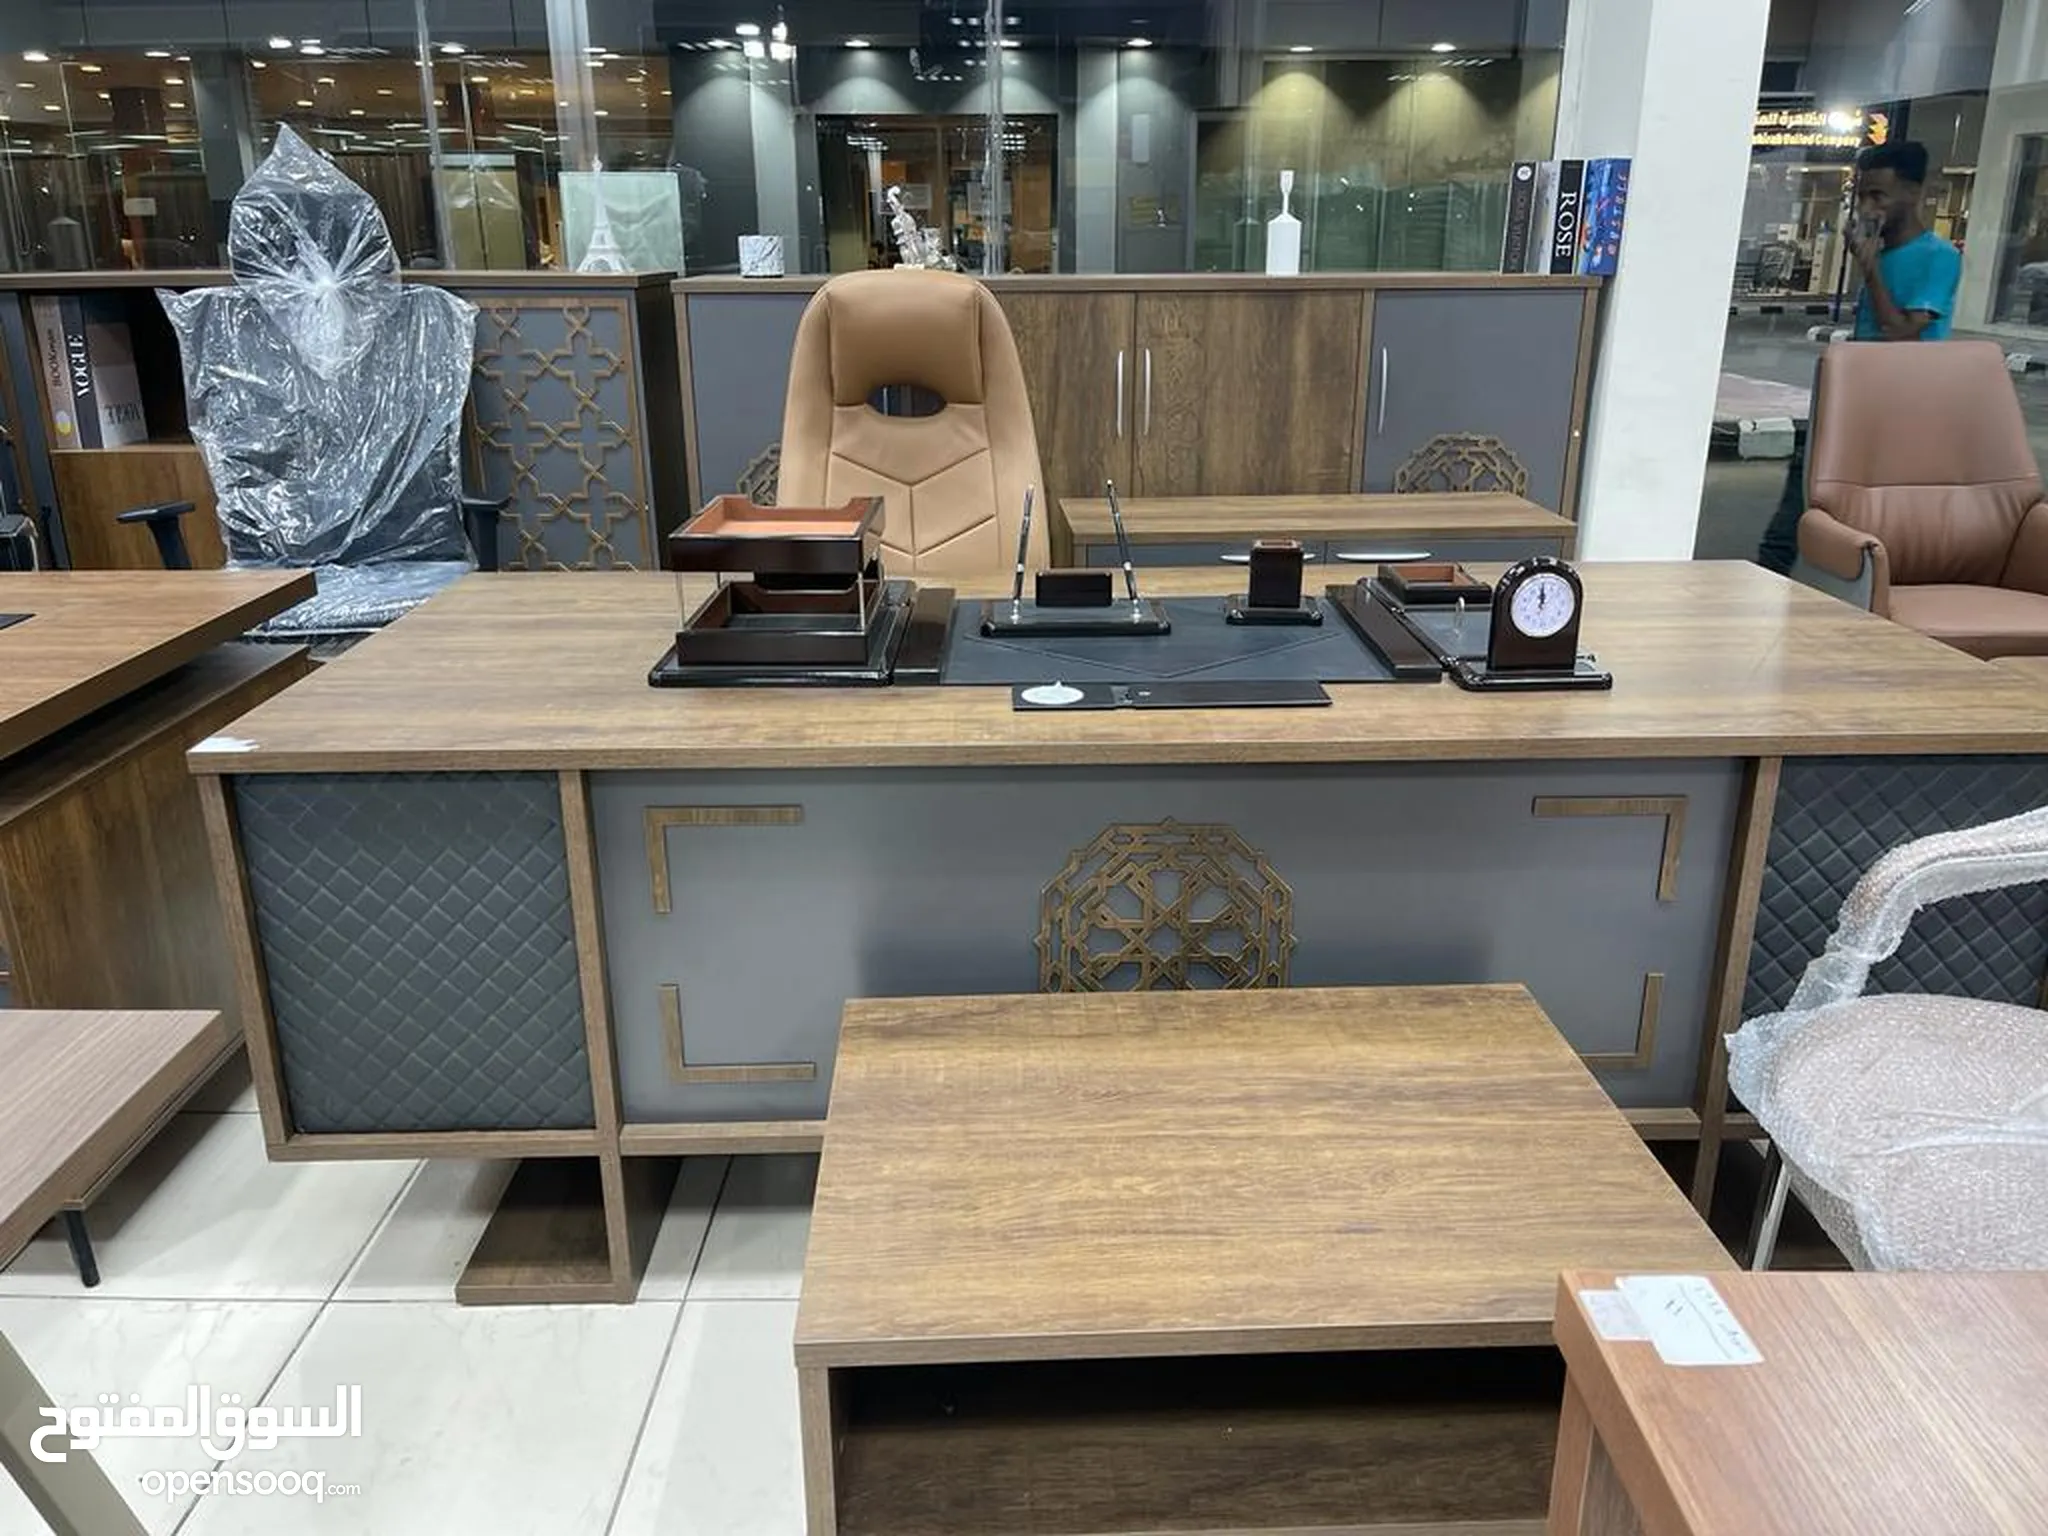 اثاث مكاتب للبيع : اثاث مكتبي : طاولات وكراسي : ارخص الاسعار في جدة | السوق  المفتوح